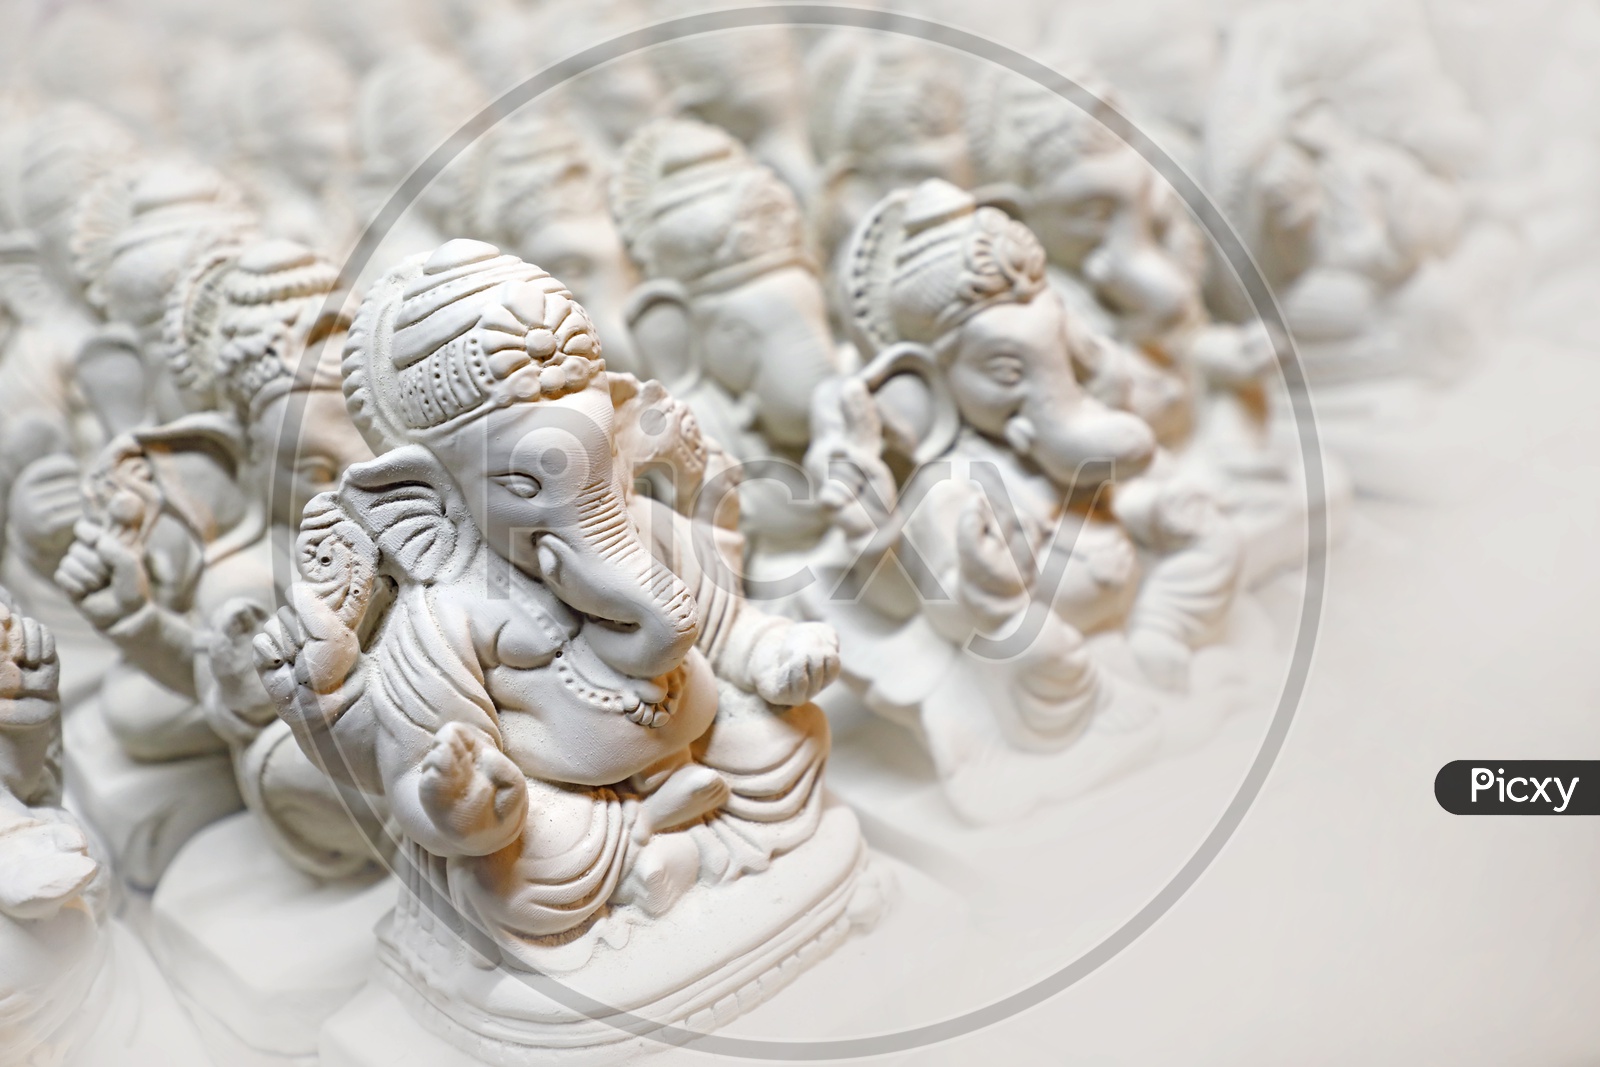 Lord Ganesha Idol / Ganesh Clay Idol